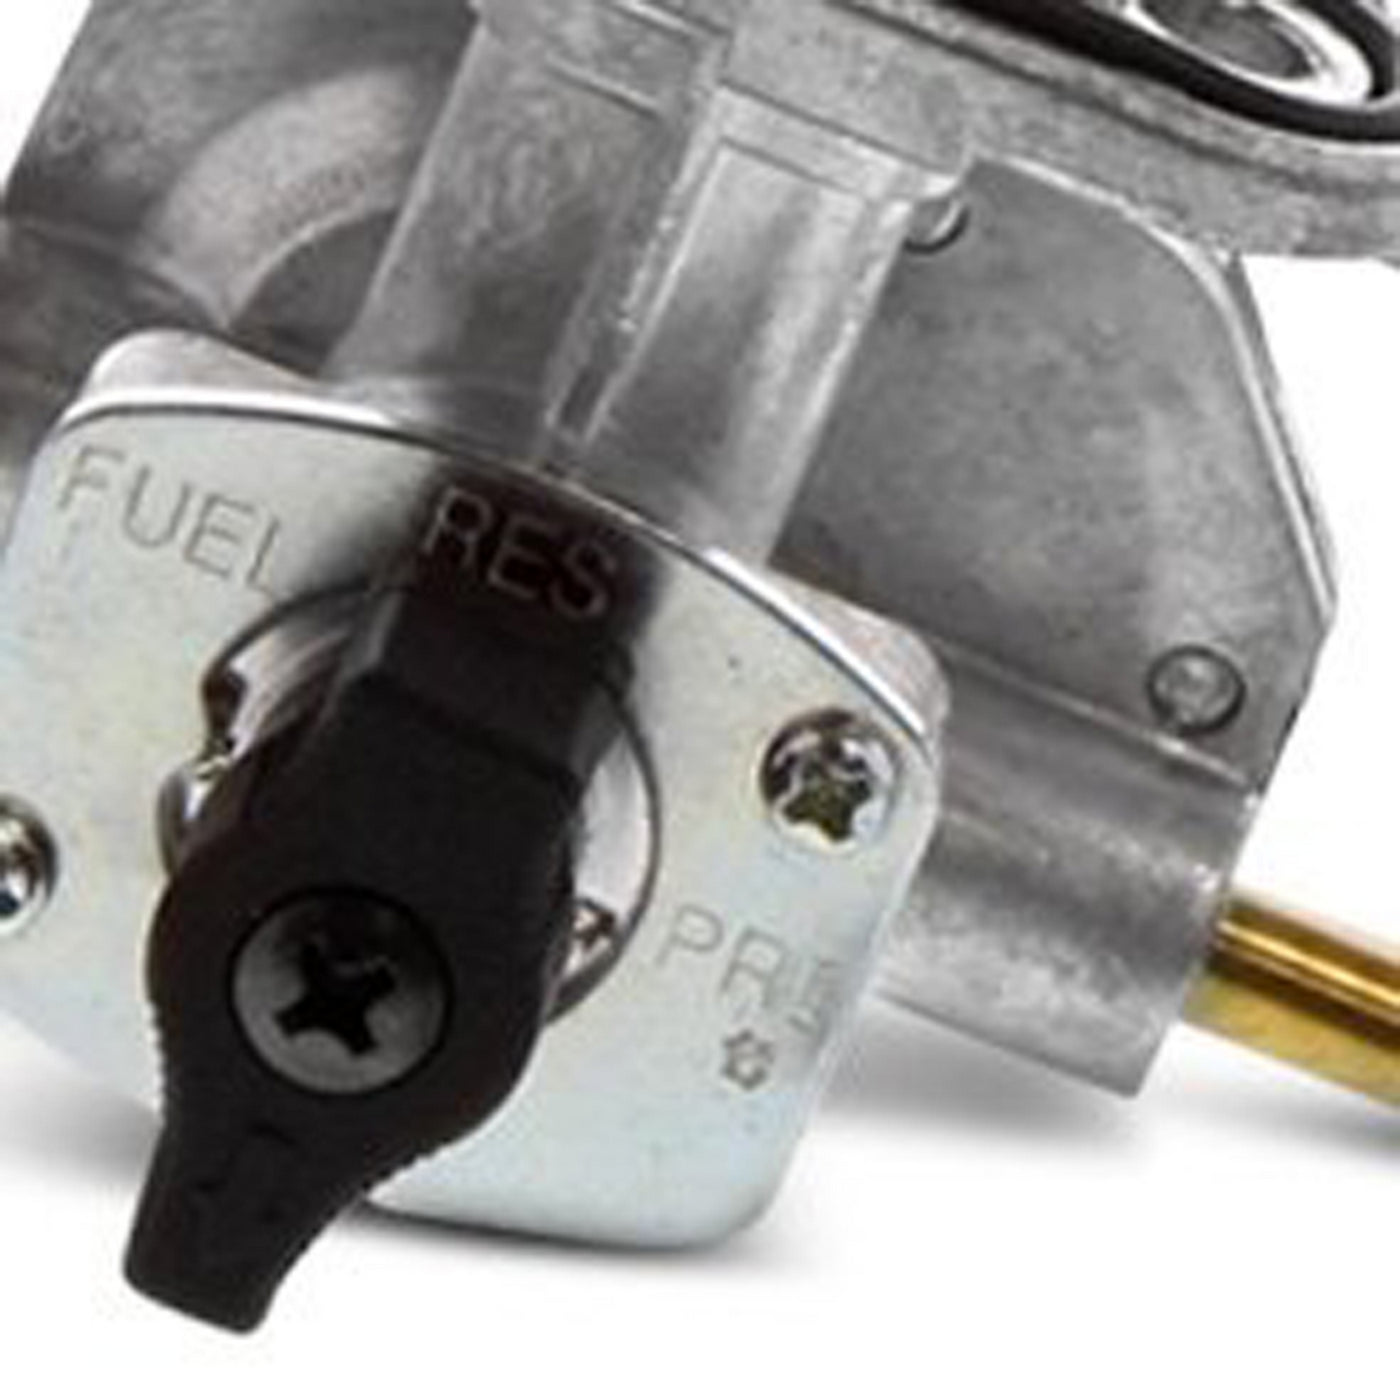 Fuel Star FS101-0141 Fuel Valve Kit #FS101-0141